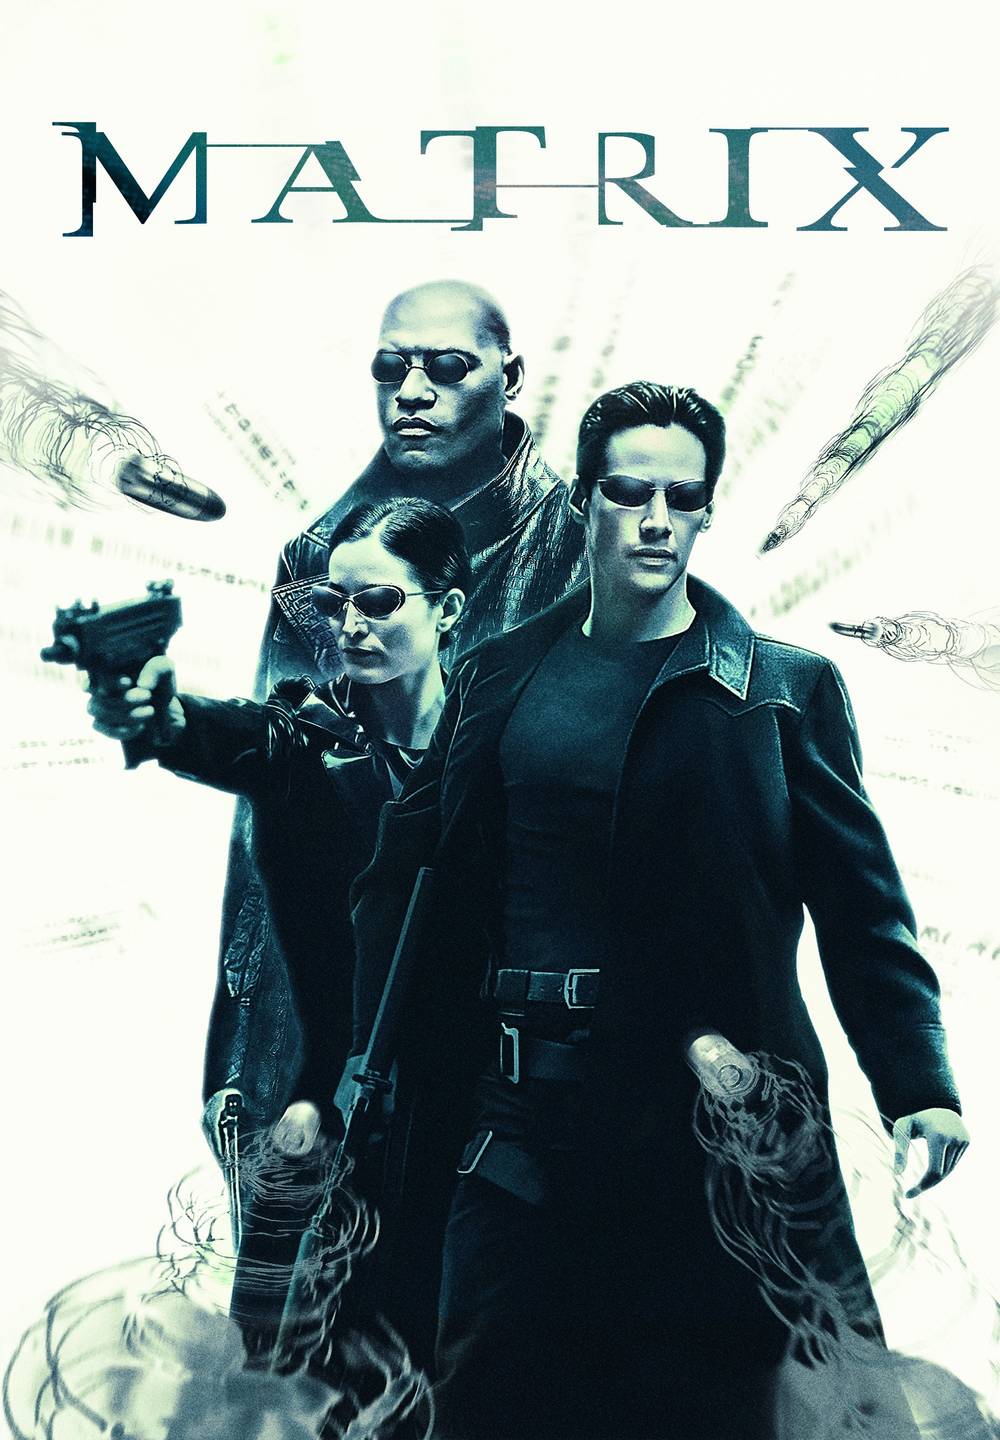 Matrix [HD/3D] (1999)